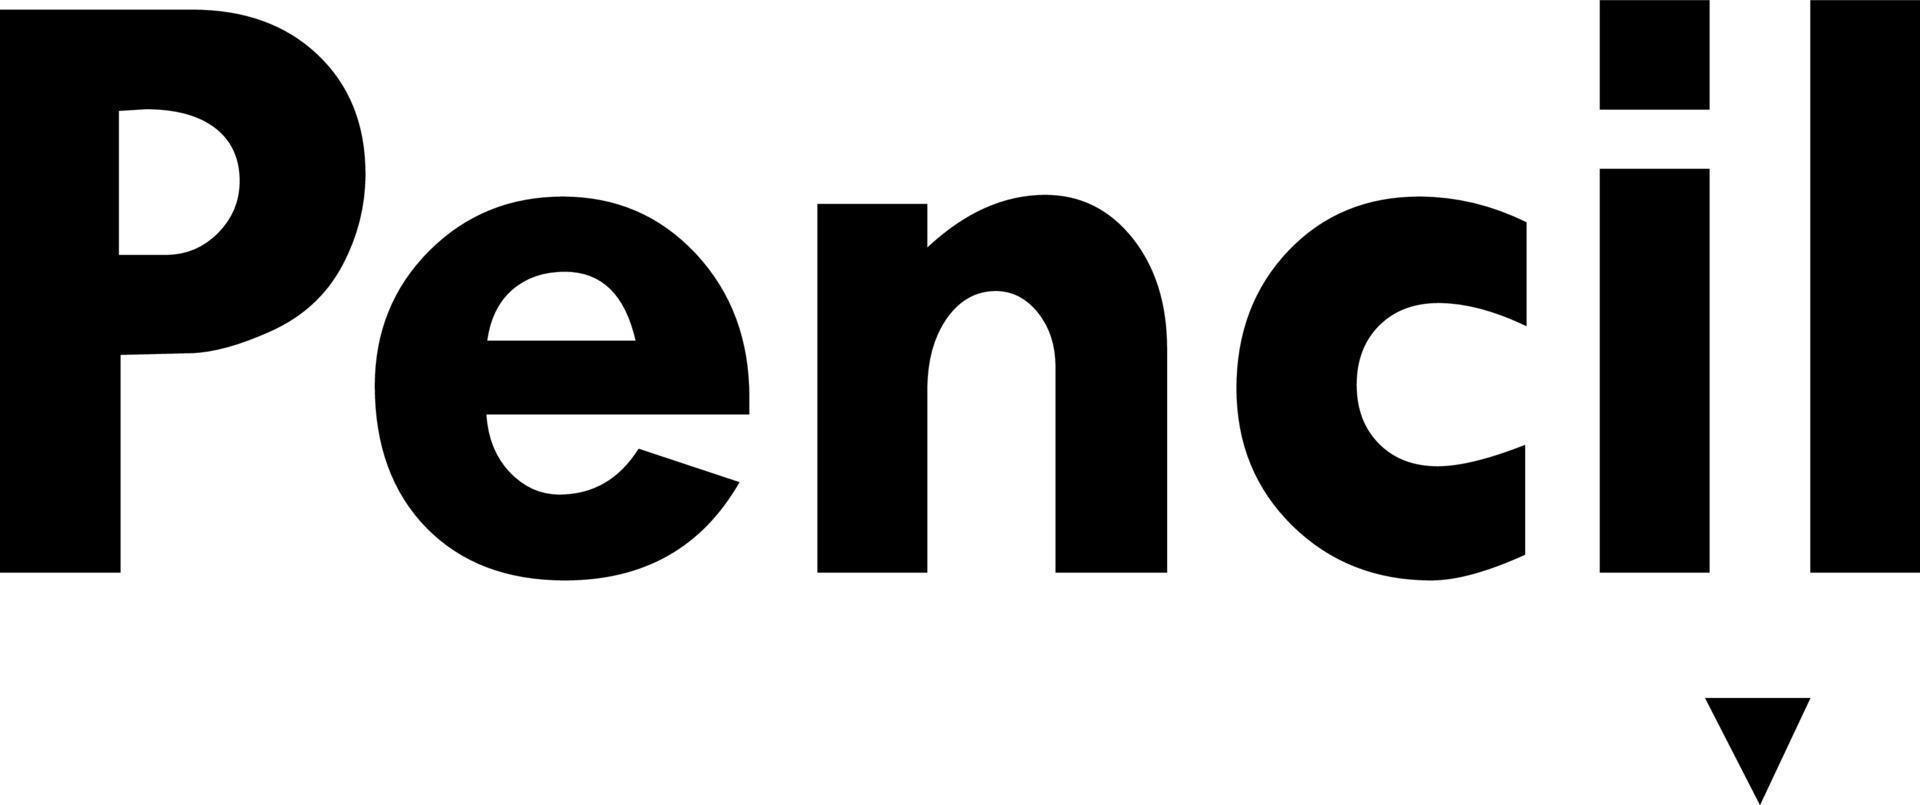 The Pencil logo vector design.